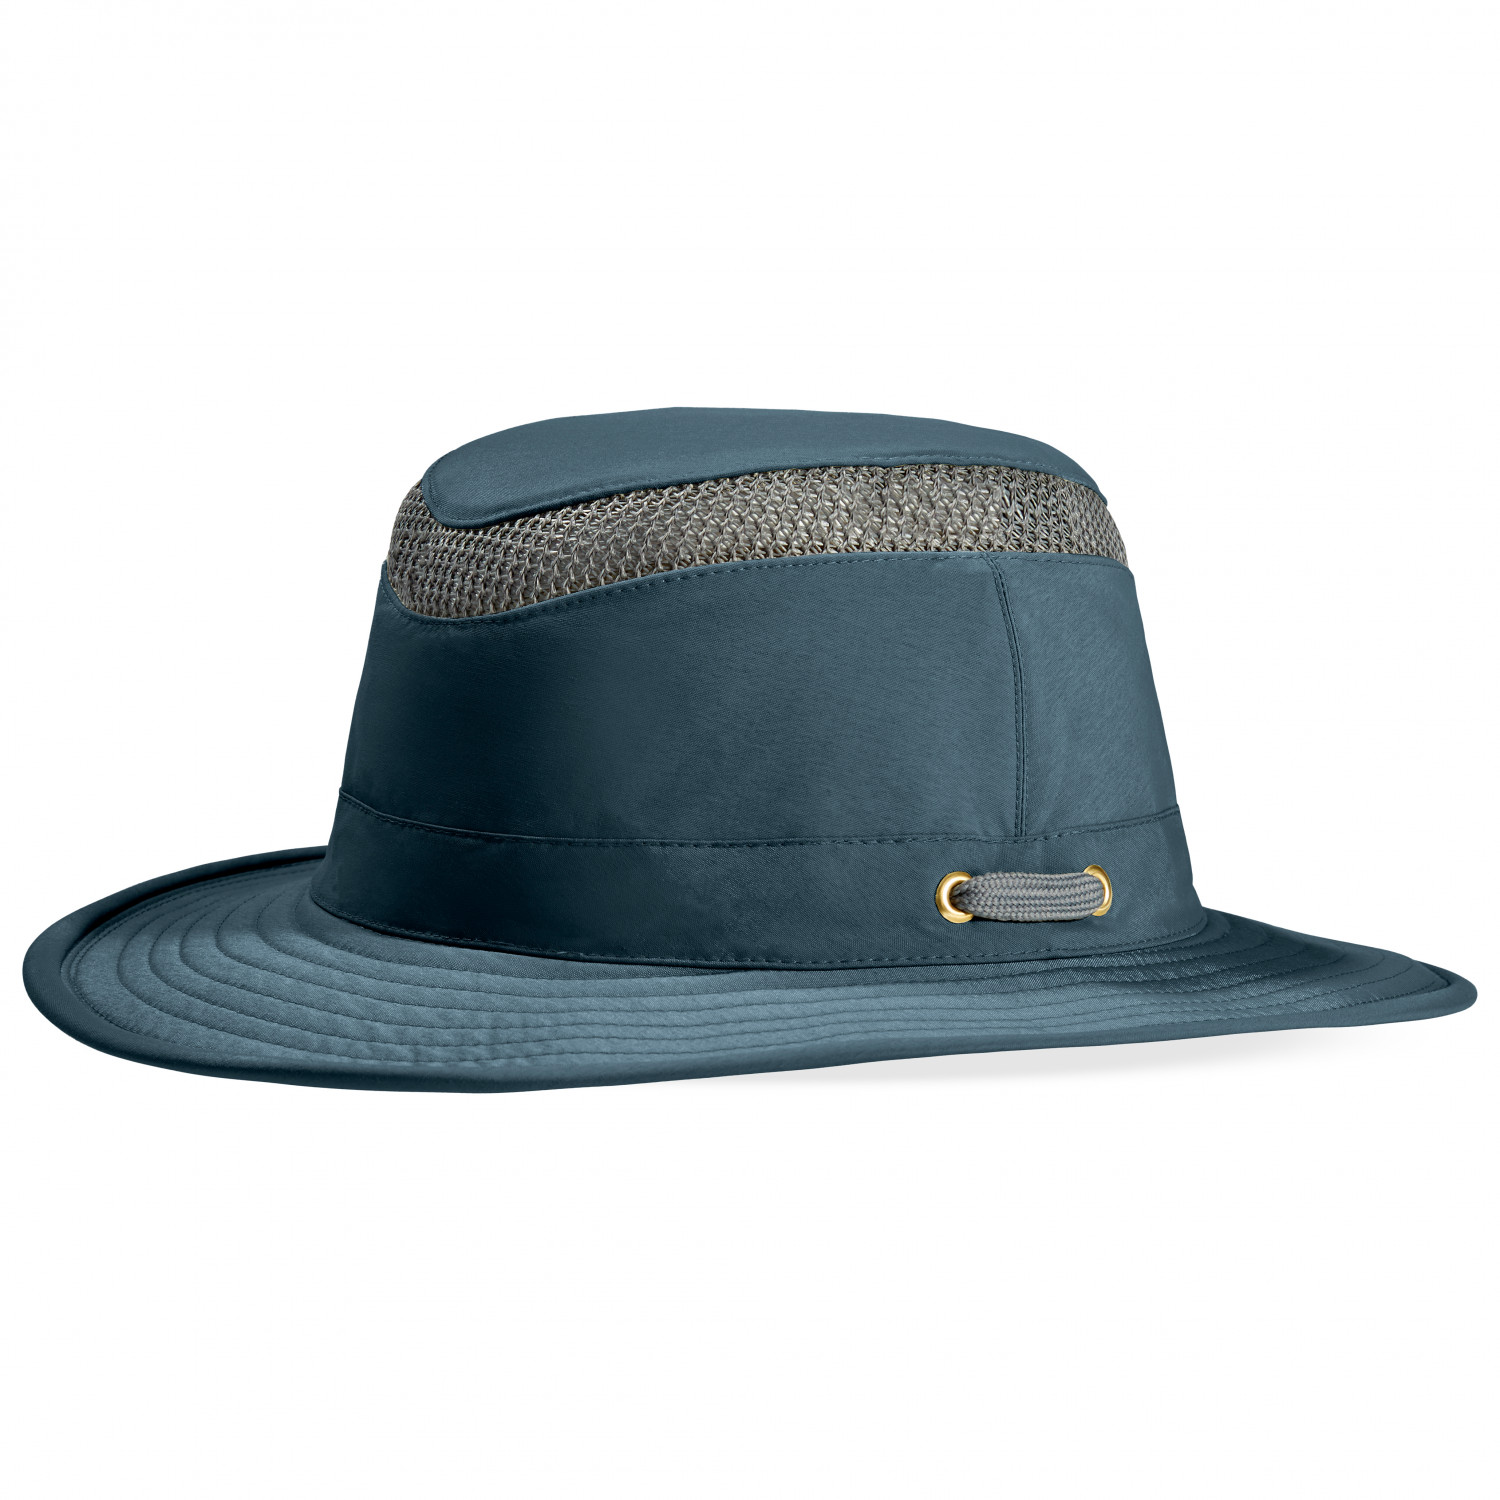 шляпа norfin с защитой от насекомых из нейлона Кепка Tilley Airflo Medium Brim Hat, цвет Midnight Navy